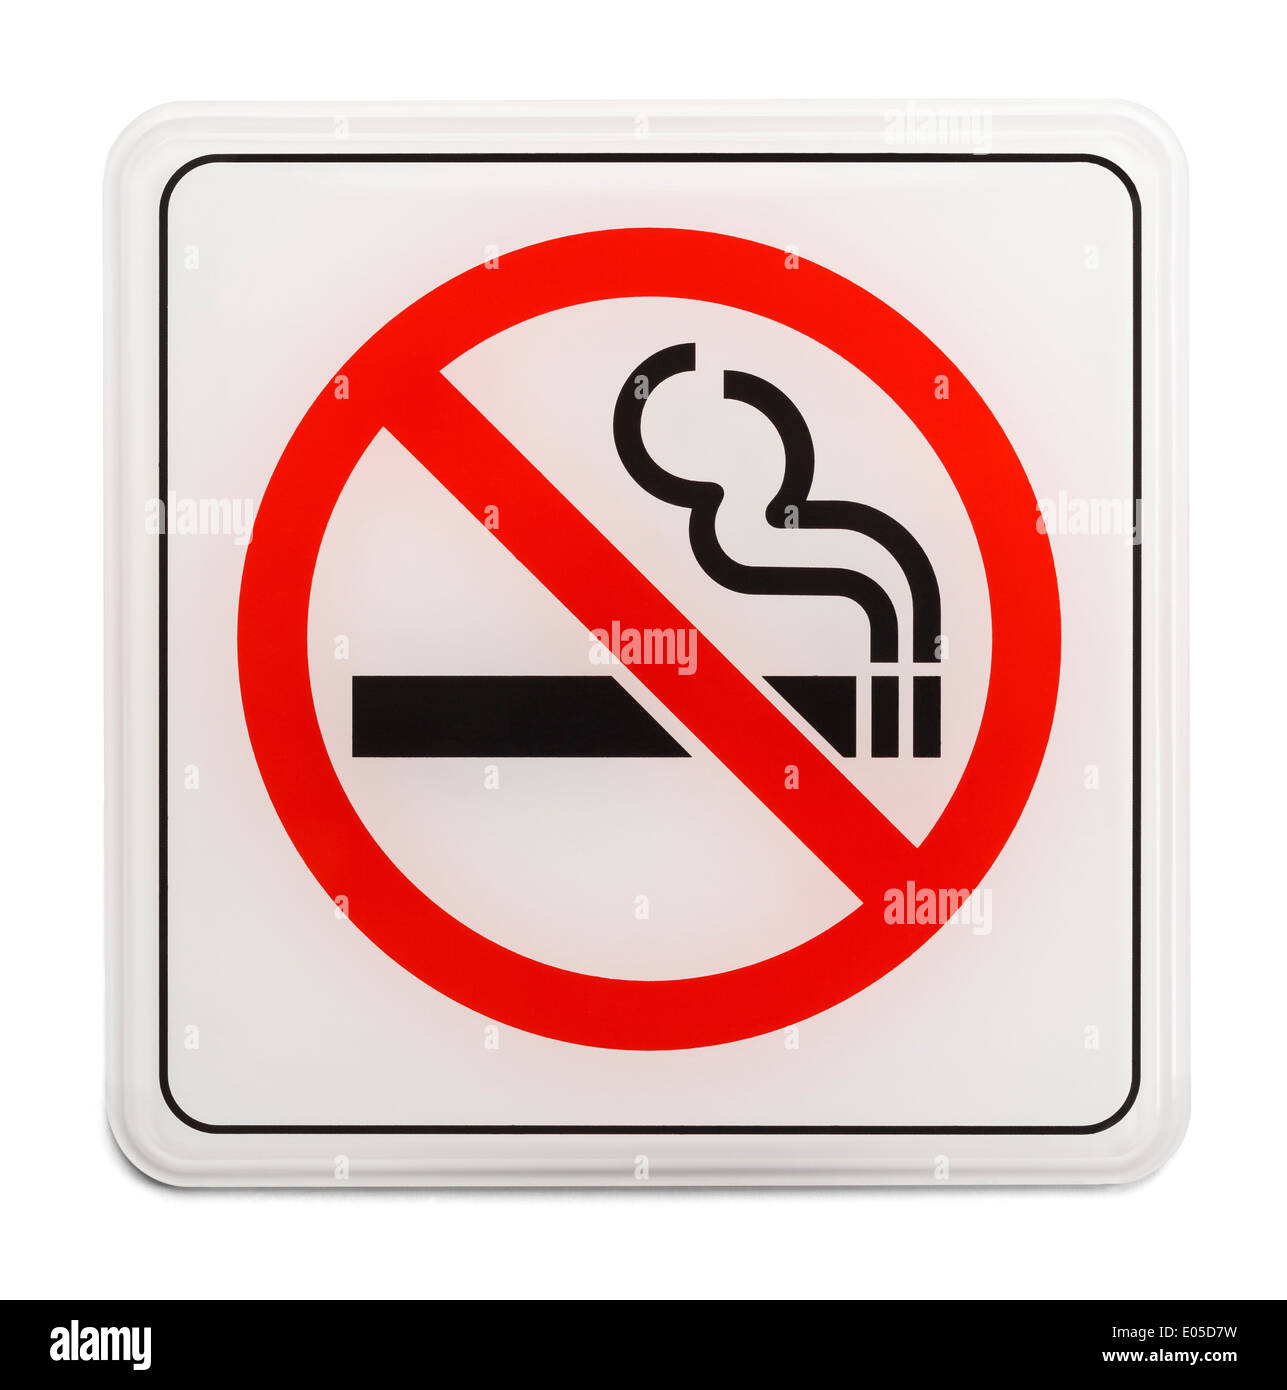 Metallschild Piktogramm Rauchverbot rund 20cm Schild Rauchen verboten 